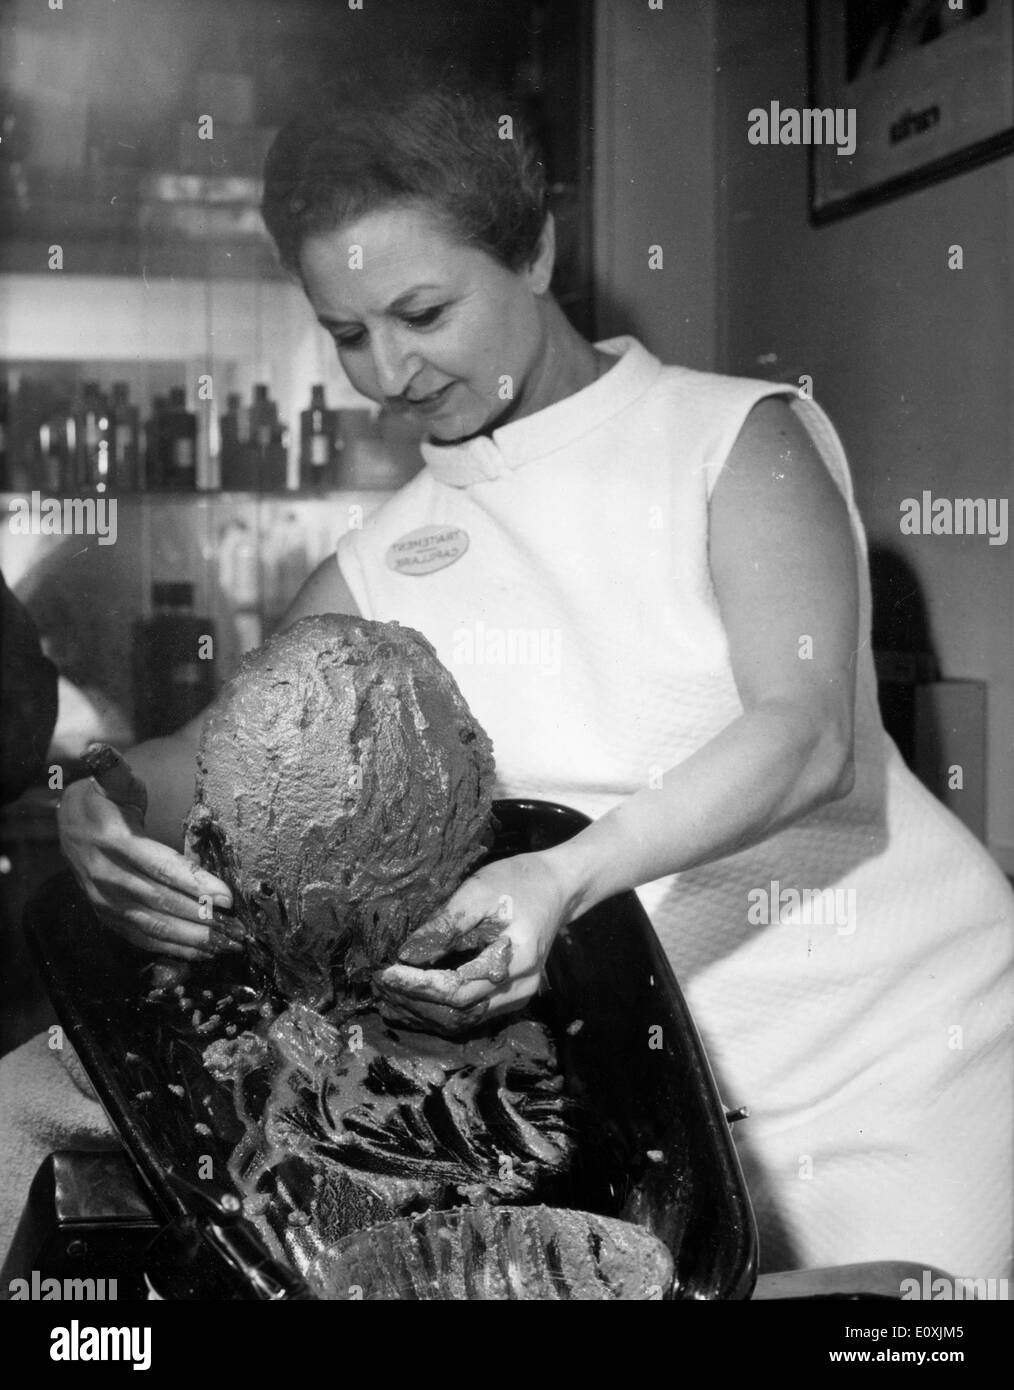 A woman getting a mud bath hair treatment at the salon Stock Photo